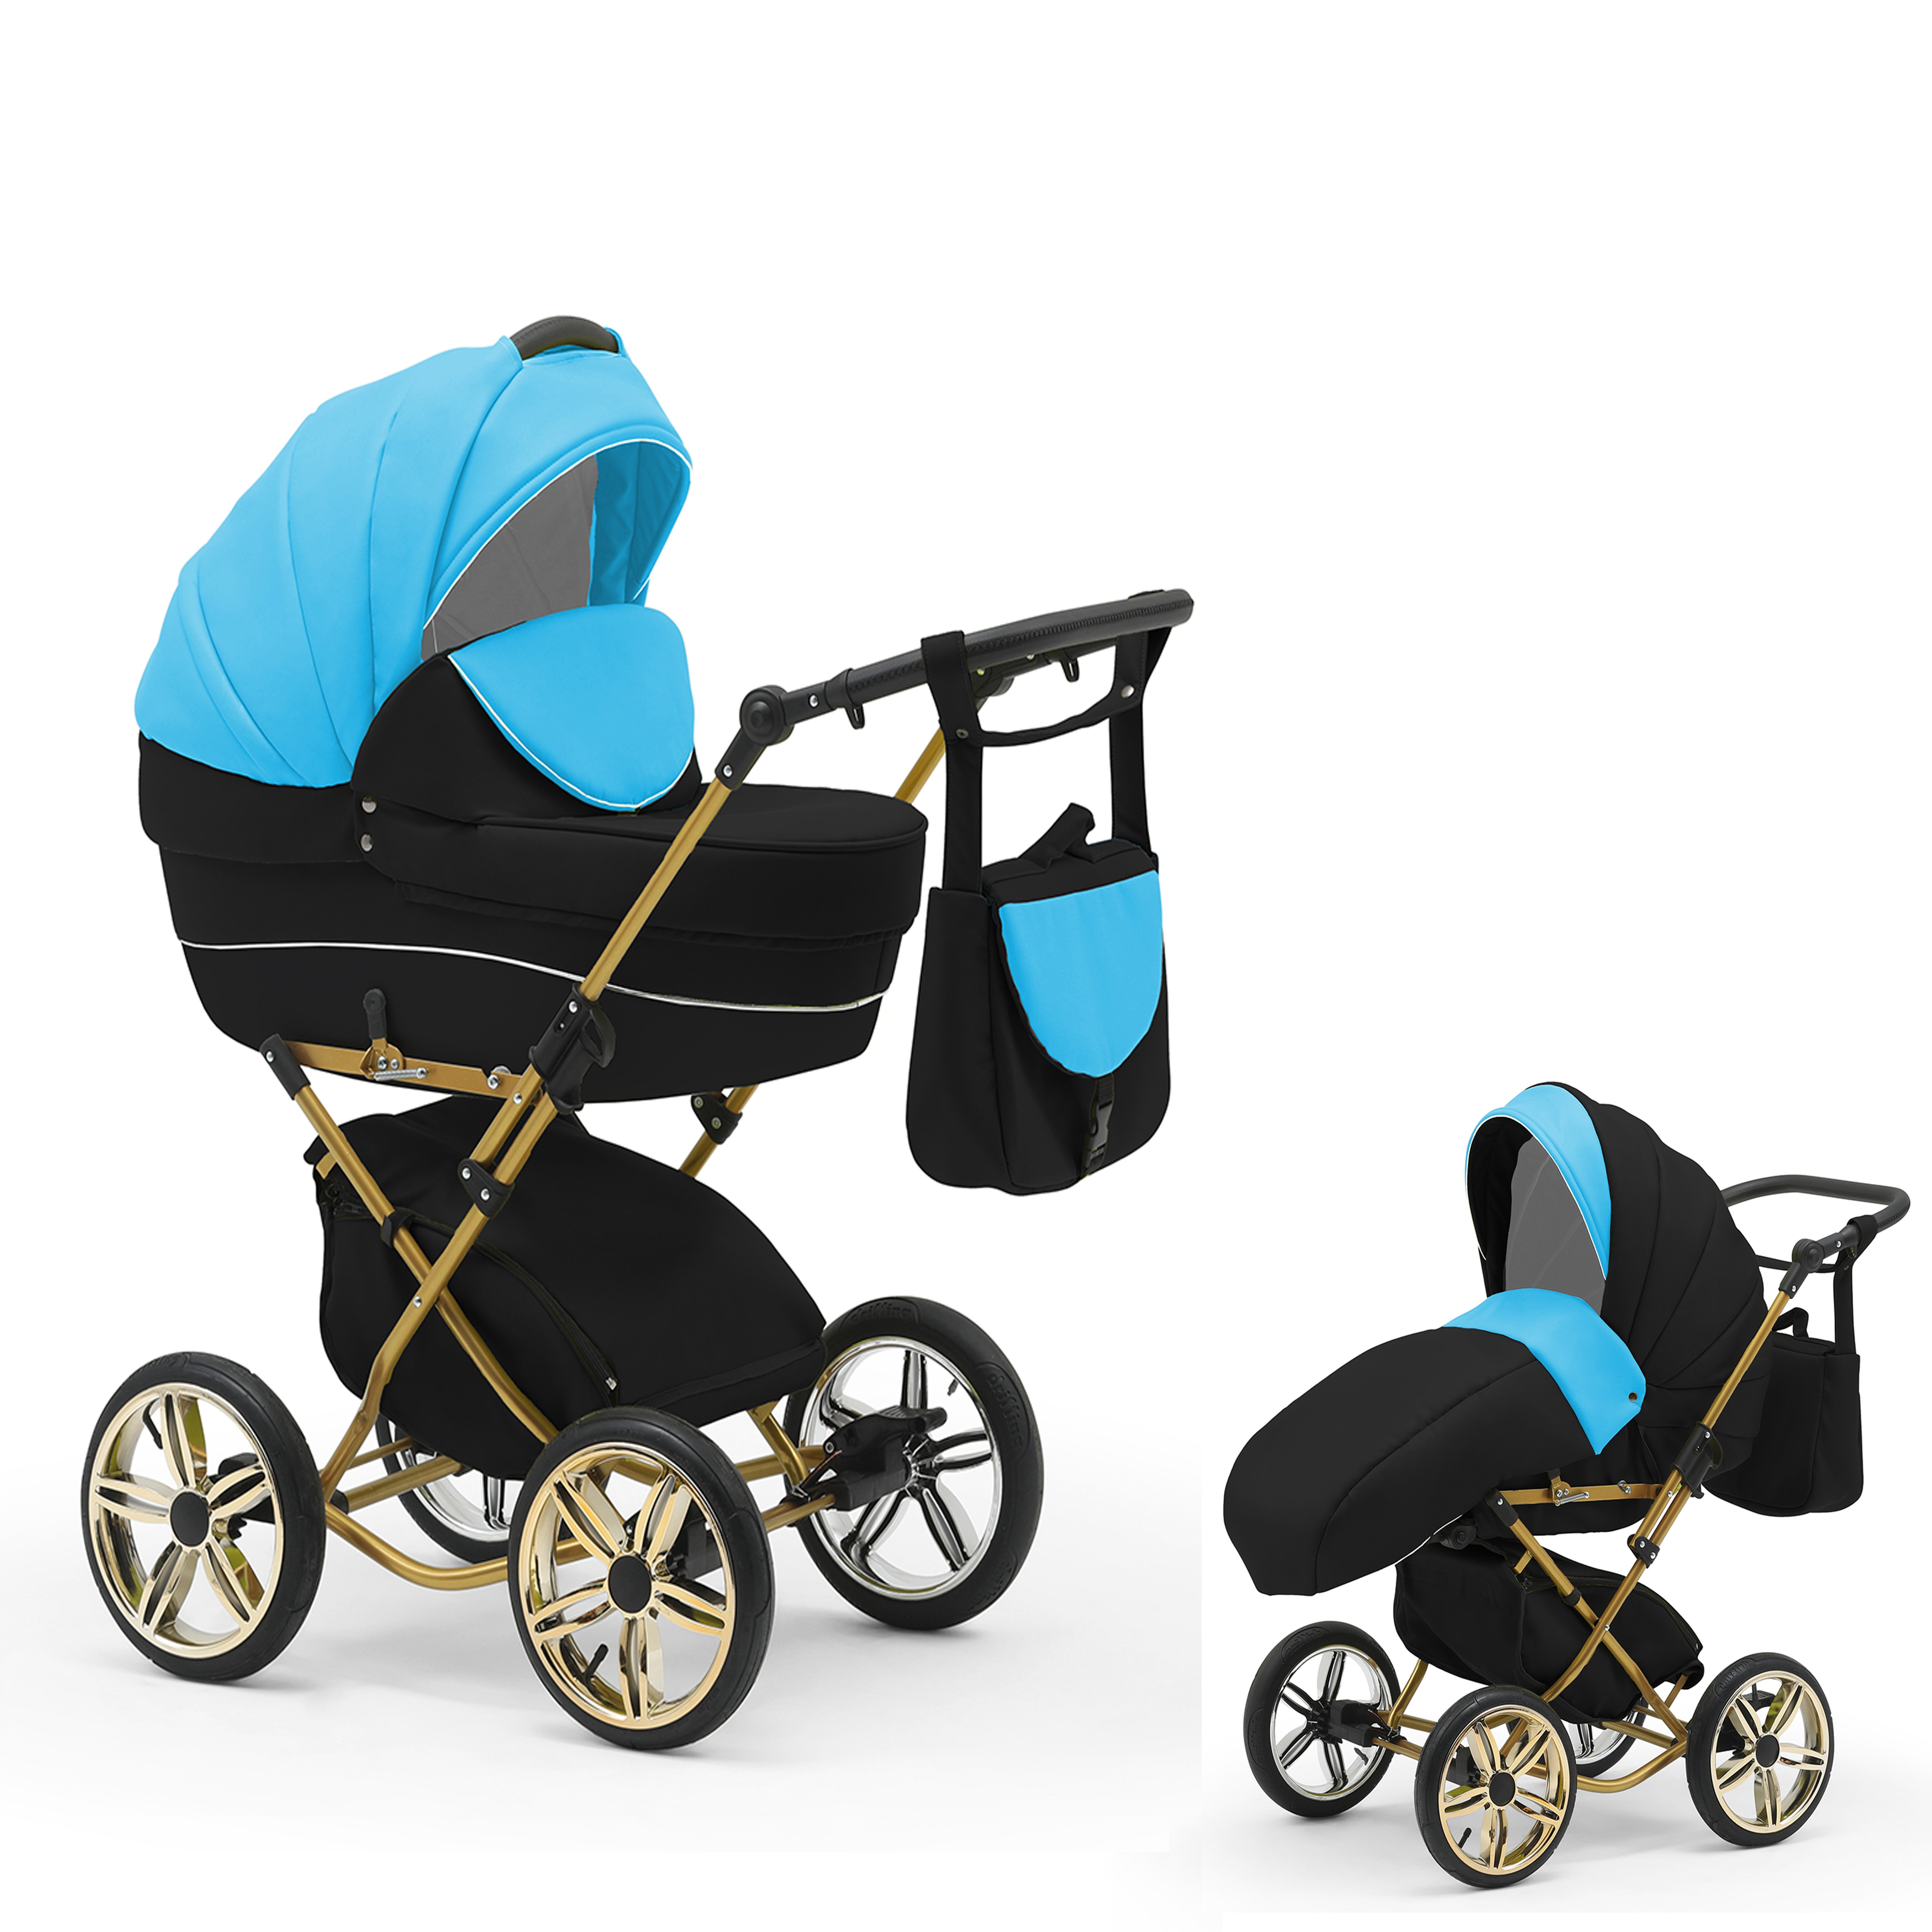 1 Teile - Sorento Türkis-Schwarz 11 bis Kombi-Kinderwagen Designs von Jahre in - babies-on-wheels 2 30 Geburt in 4